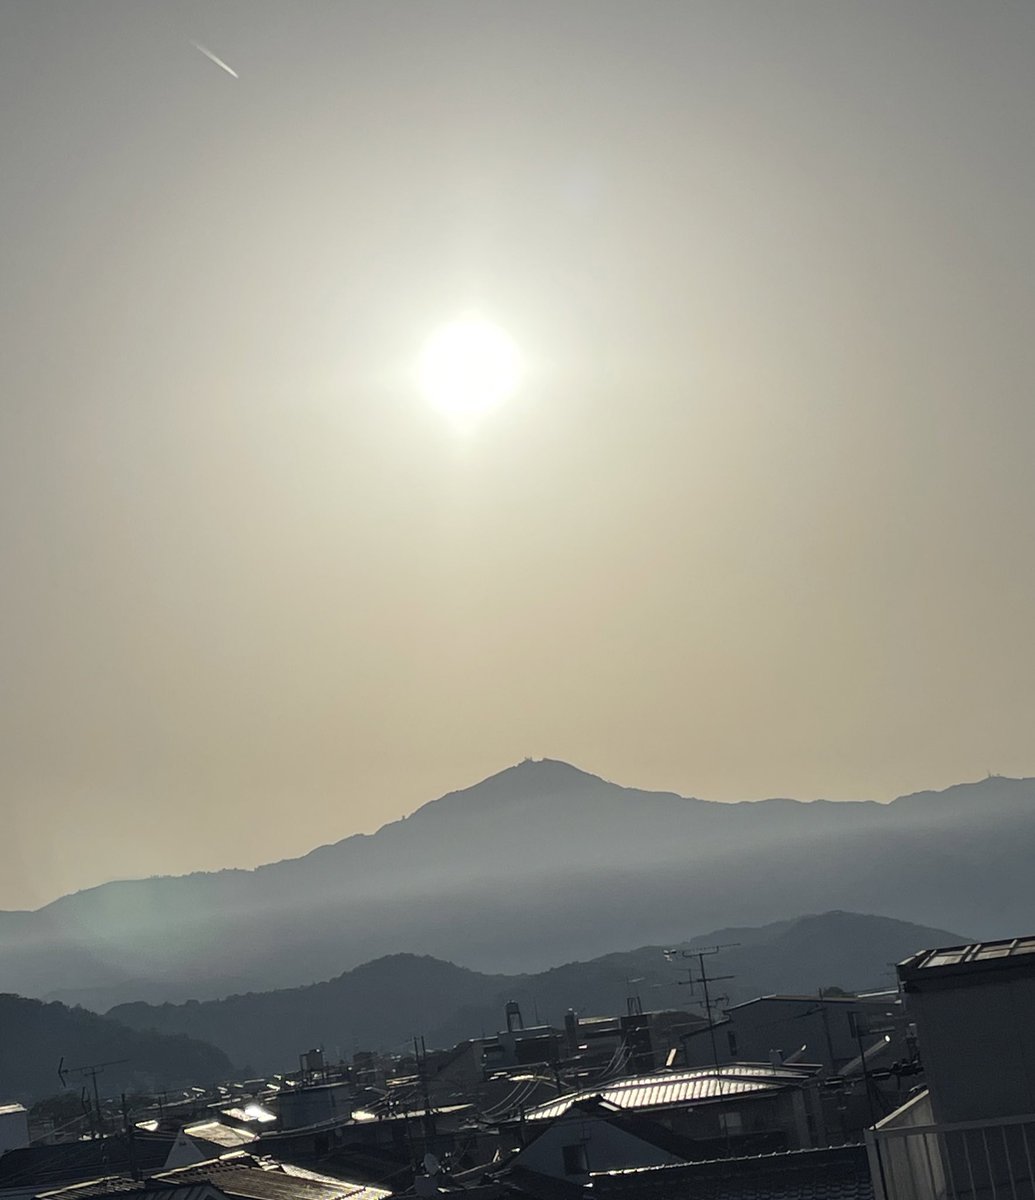 おはようございます 6時15分の #いまそら です 今日も良いお天気 既に暖かいです 良い #ゴールデンウィーク をお過ごし下さい #粽 #柏餅 はしていません #旅奴 #夕ばえ で頑張ります #生菓子 #みくらかん #白みくらかん などご用意してお待ちしています 今日もよろしくお願いします🙇‍♀️ #比叡山 #京都